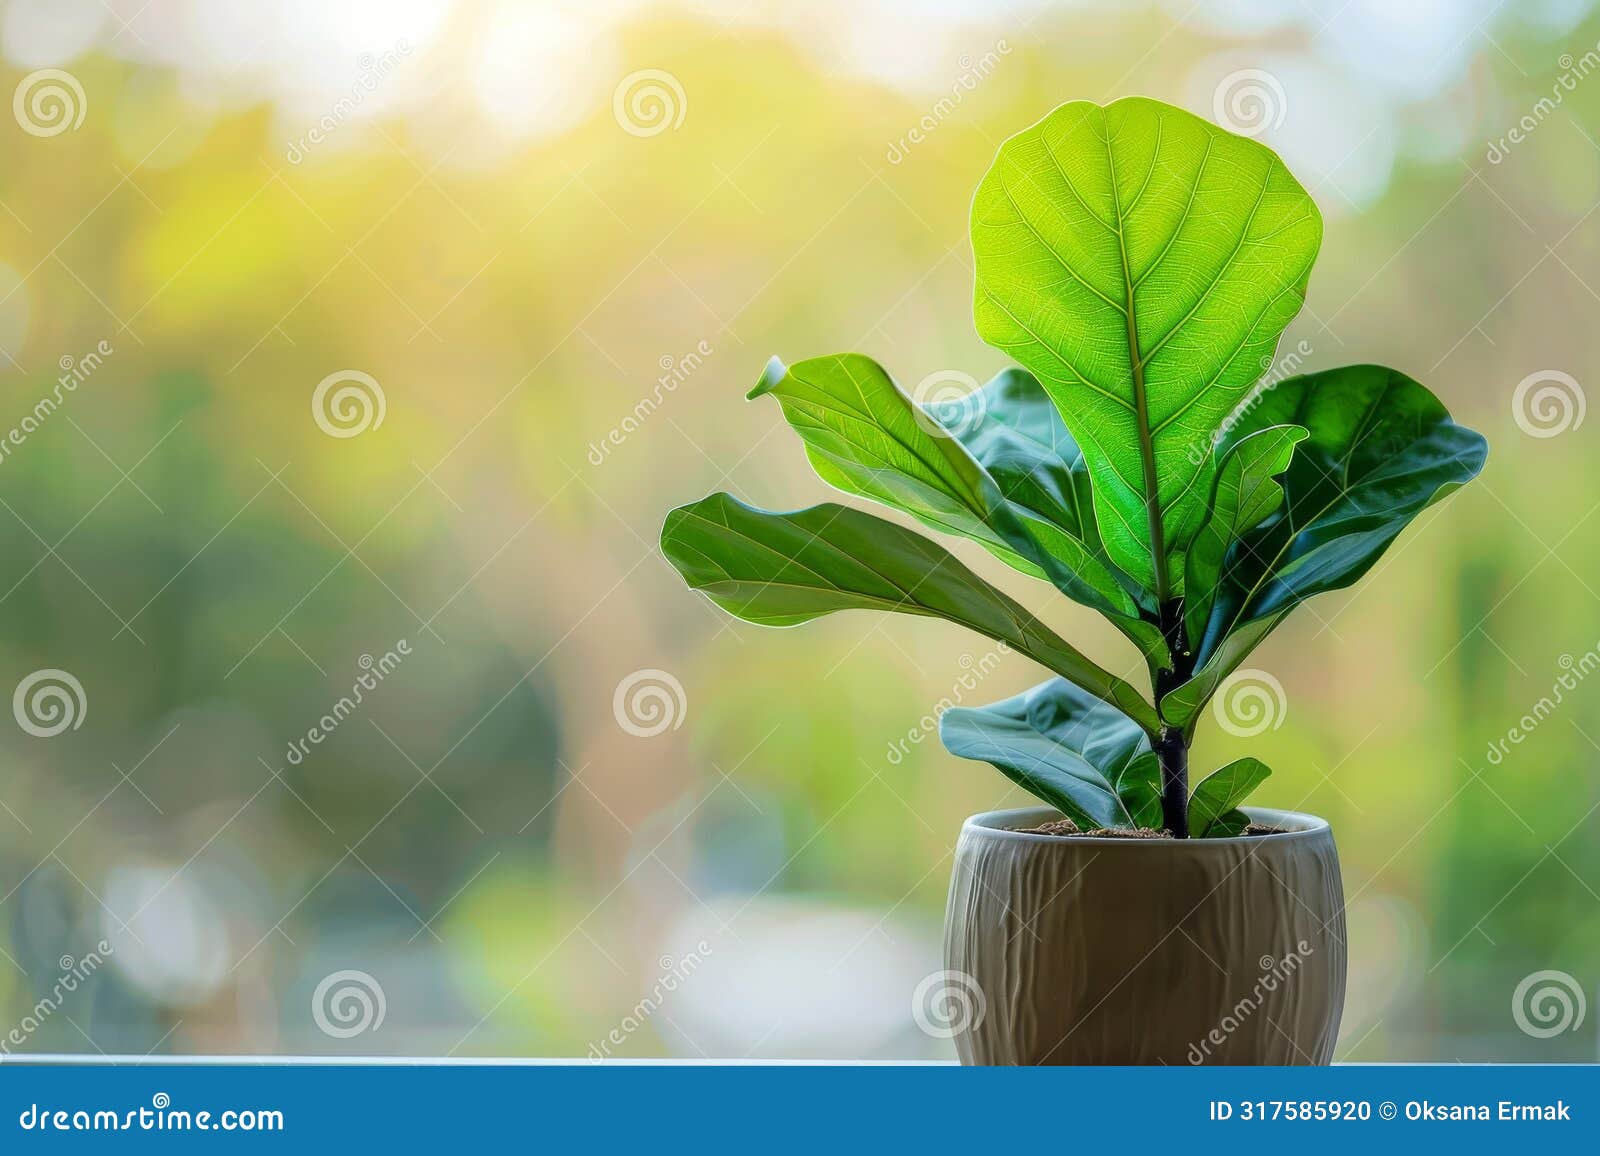 fiddle leaf fig (ficus lyrata) in flowerpot closeup, fiddle leaf fig ficus macro house plant in flowerpot